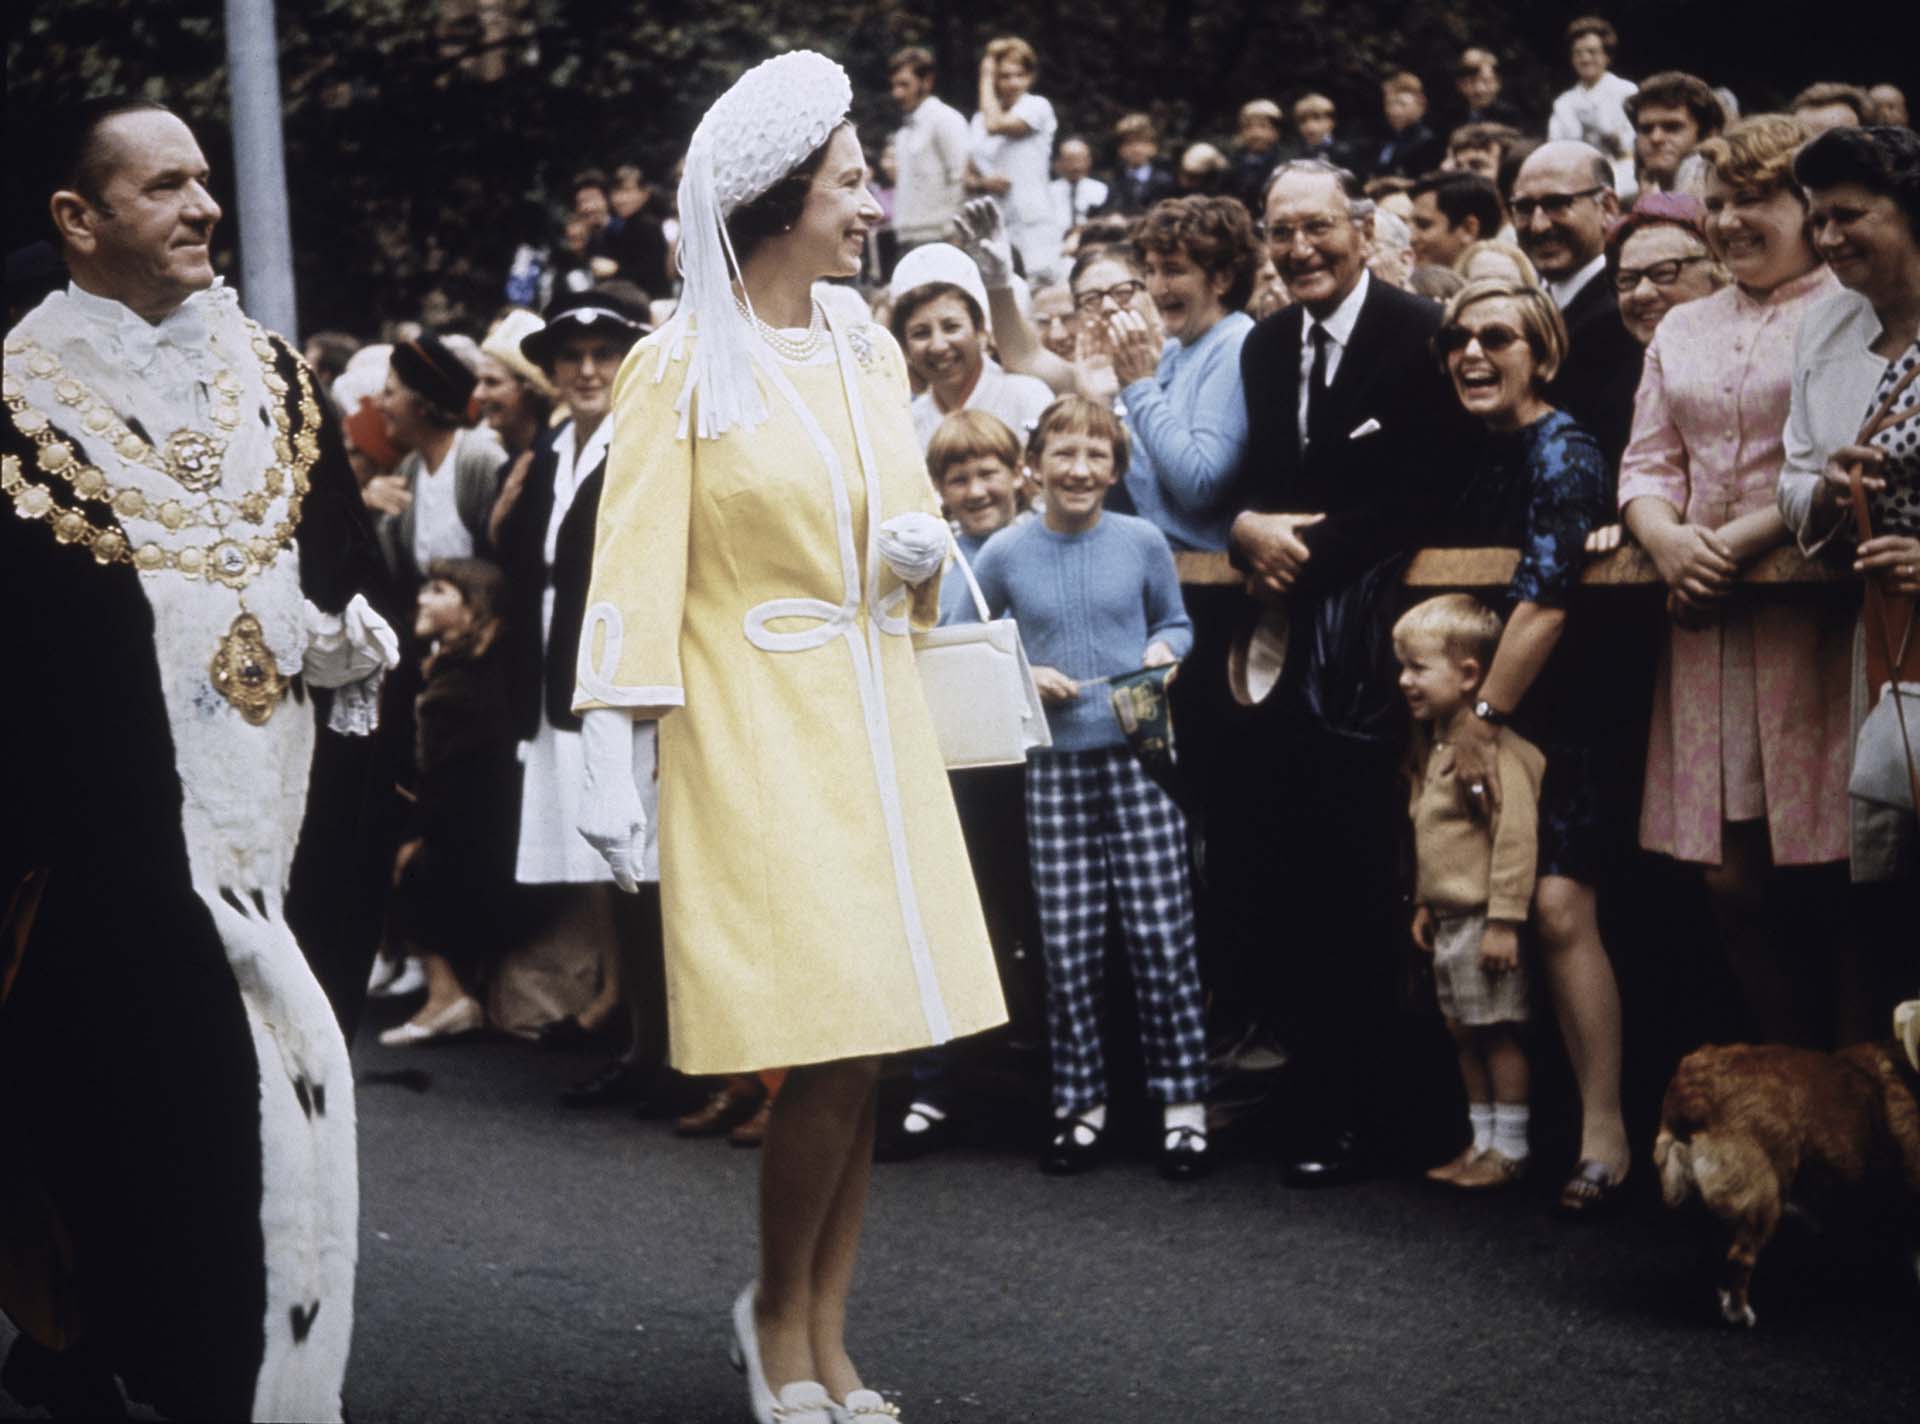 La reina recorrió el mundo varias veces para cumplir con todas sus obligaciones monárquicas. En esta ocasión, visitó Town Hall en Sydney, acompañada por el Alcalde, Emmet McDermott